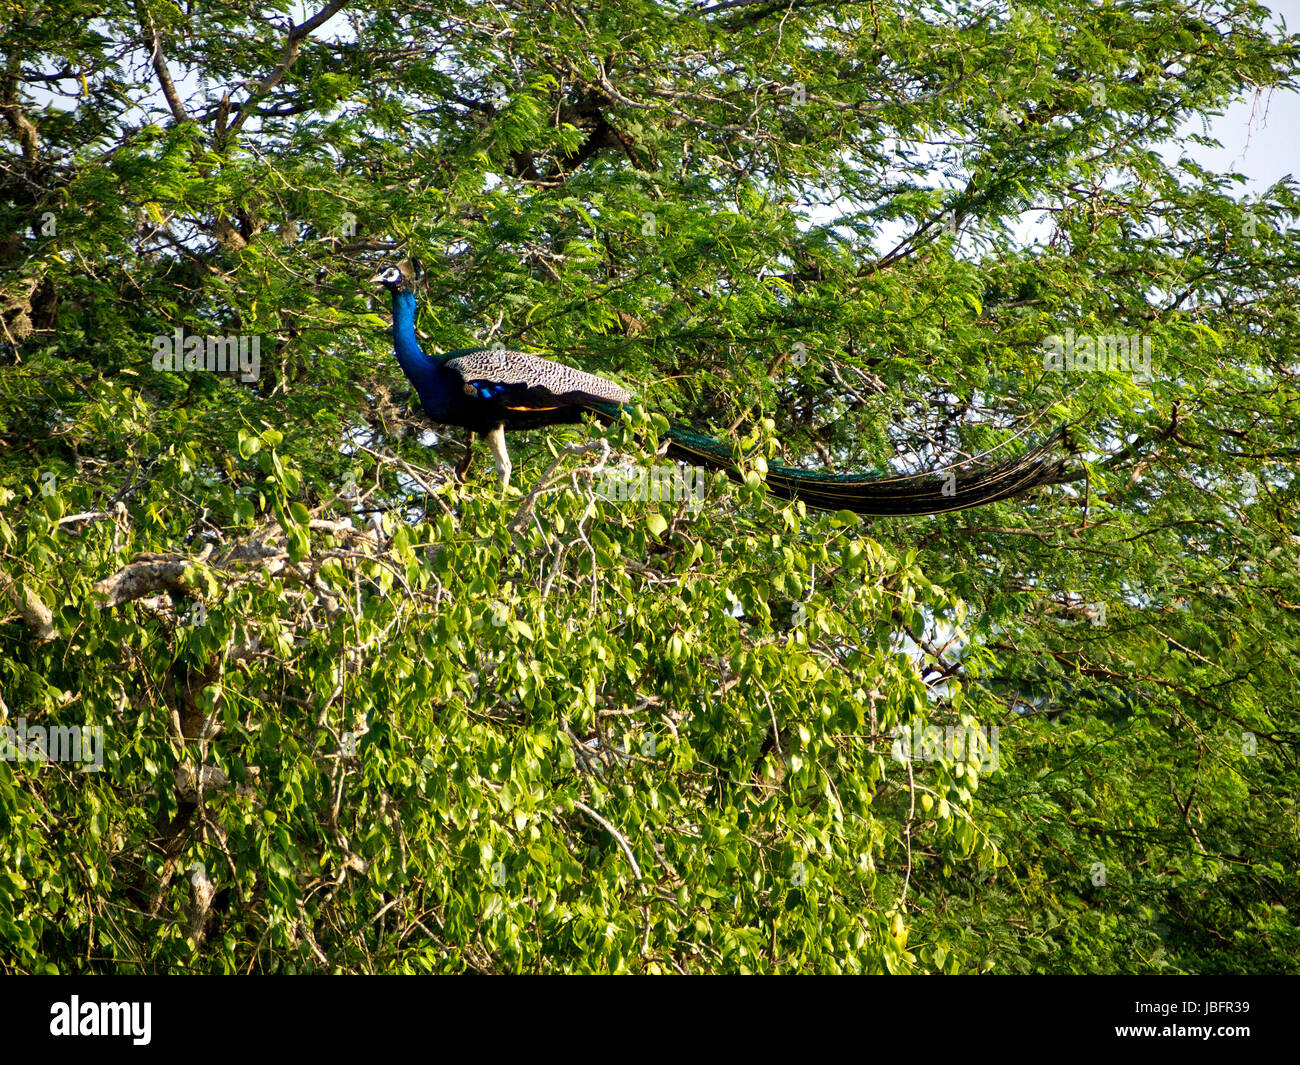 Peacock seduto su una struttura ad albero di Bundala National Park in Sri Lanka Foto Stock